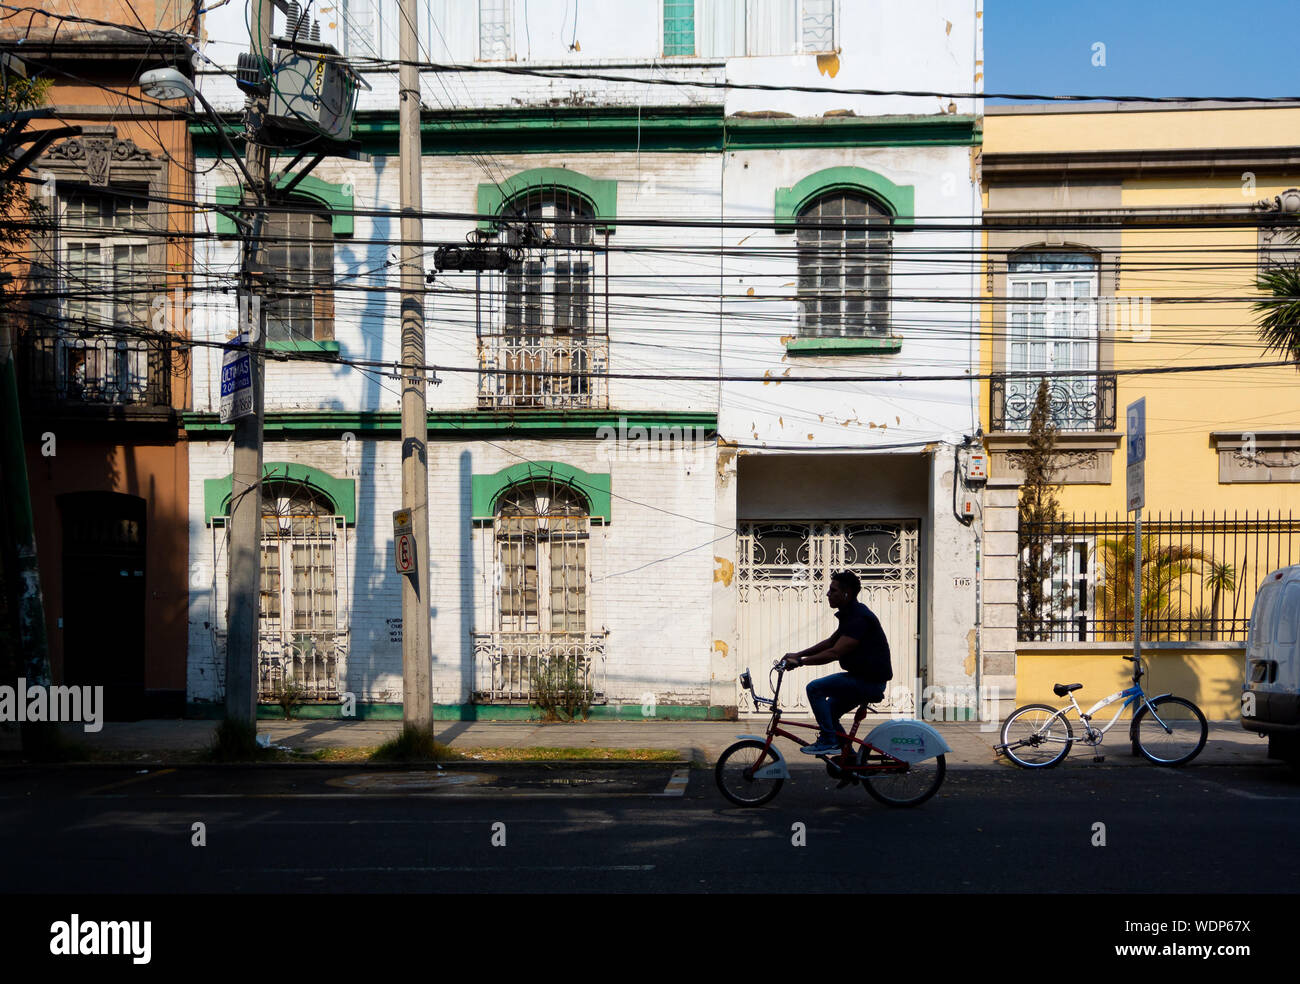 Silhouette d'un homme local sur un vélo dans la rue, Mexico, Mexique Banque D'Images